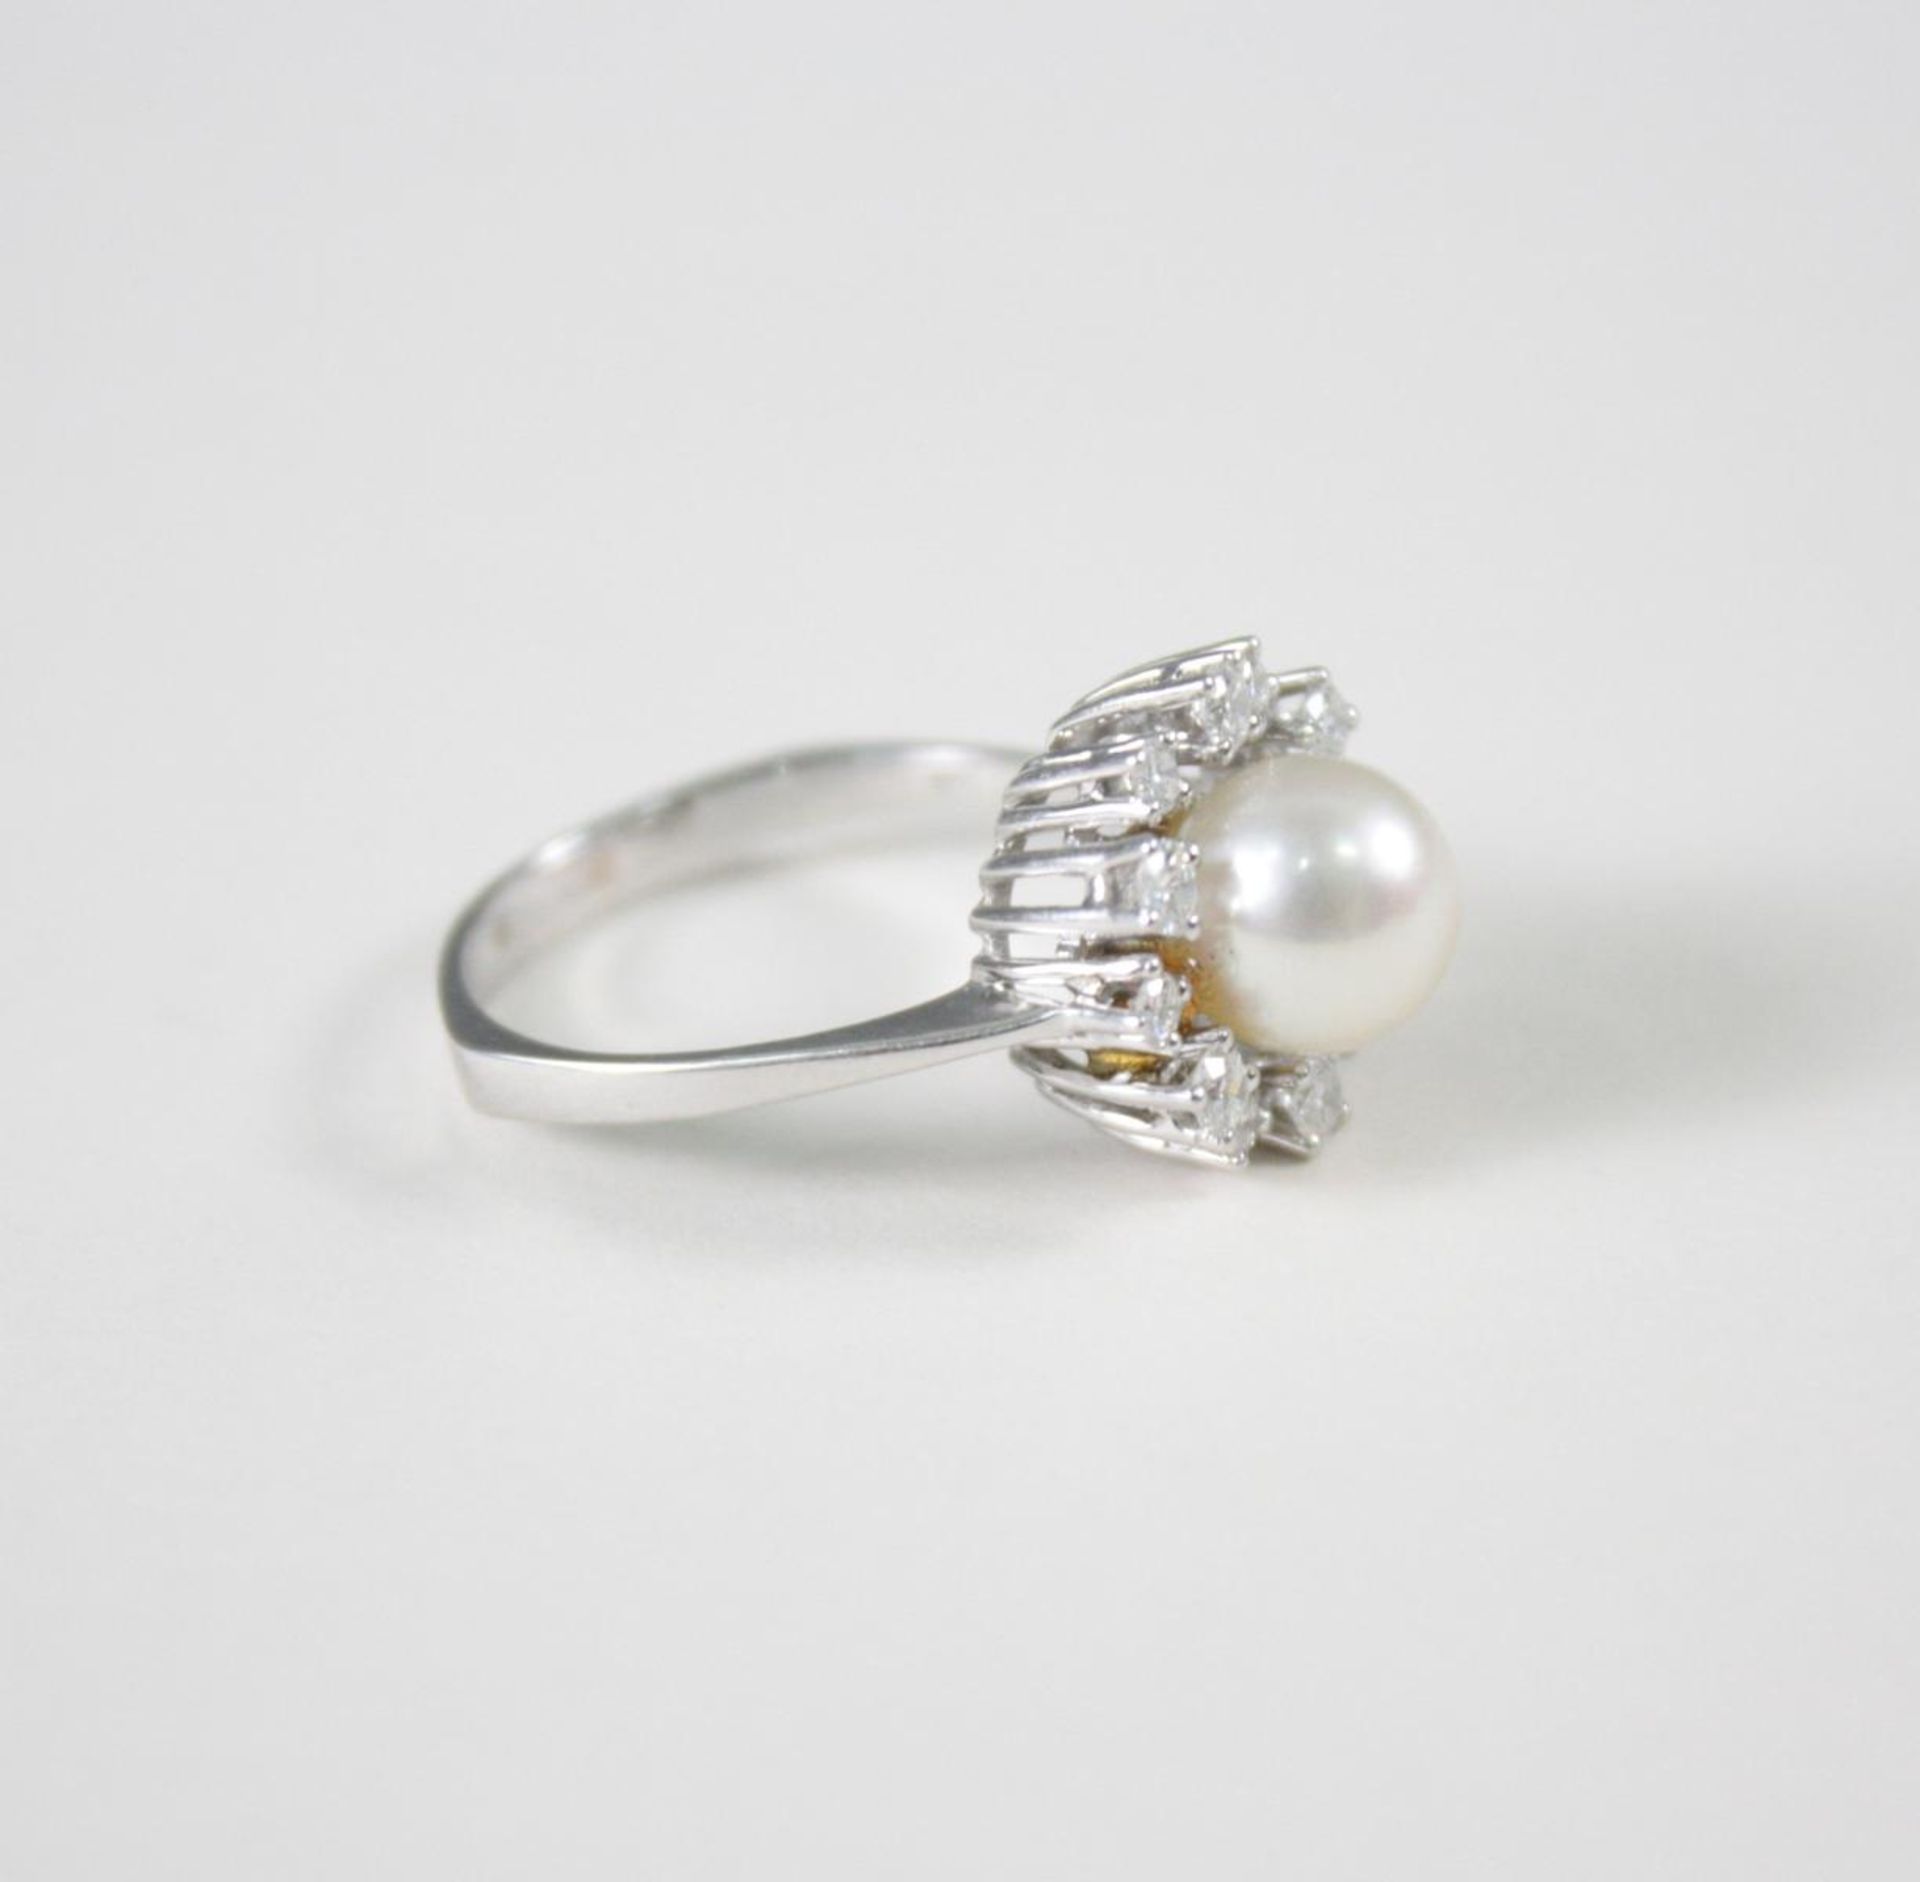 Damenring mit Perle und Diamanten, 14 Karat Weißgold1 Perle Durchmesser 0,79 cm, 12 Diamanten von - Image 2 of 3